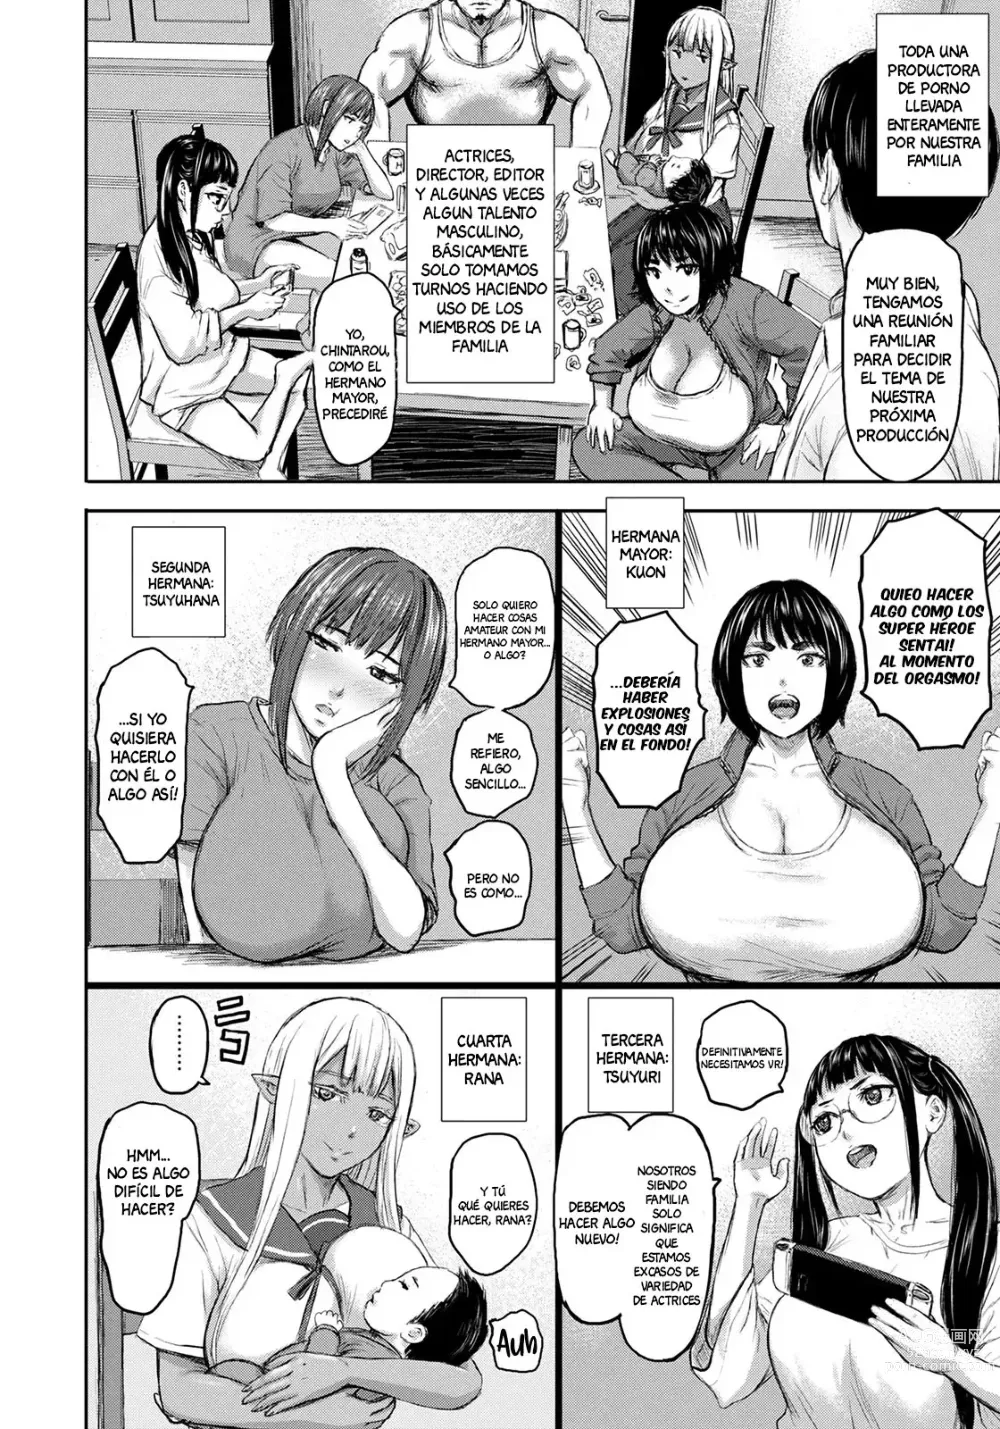 Page 10 of manga AV Family 1